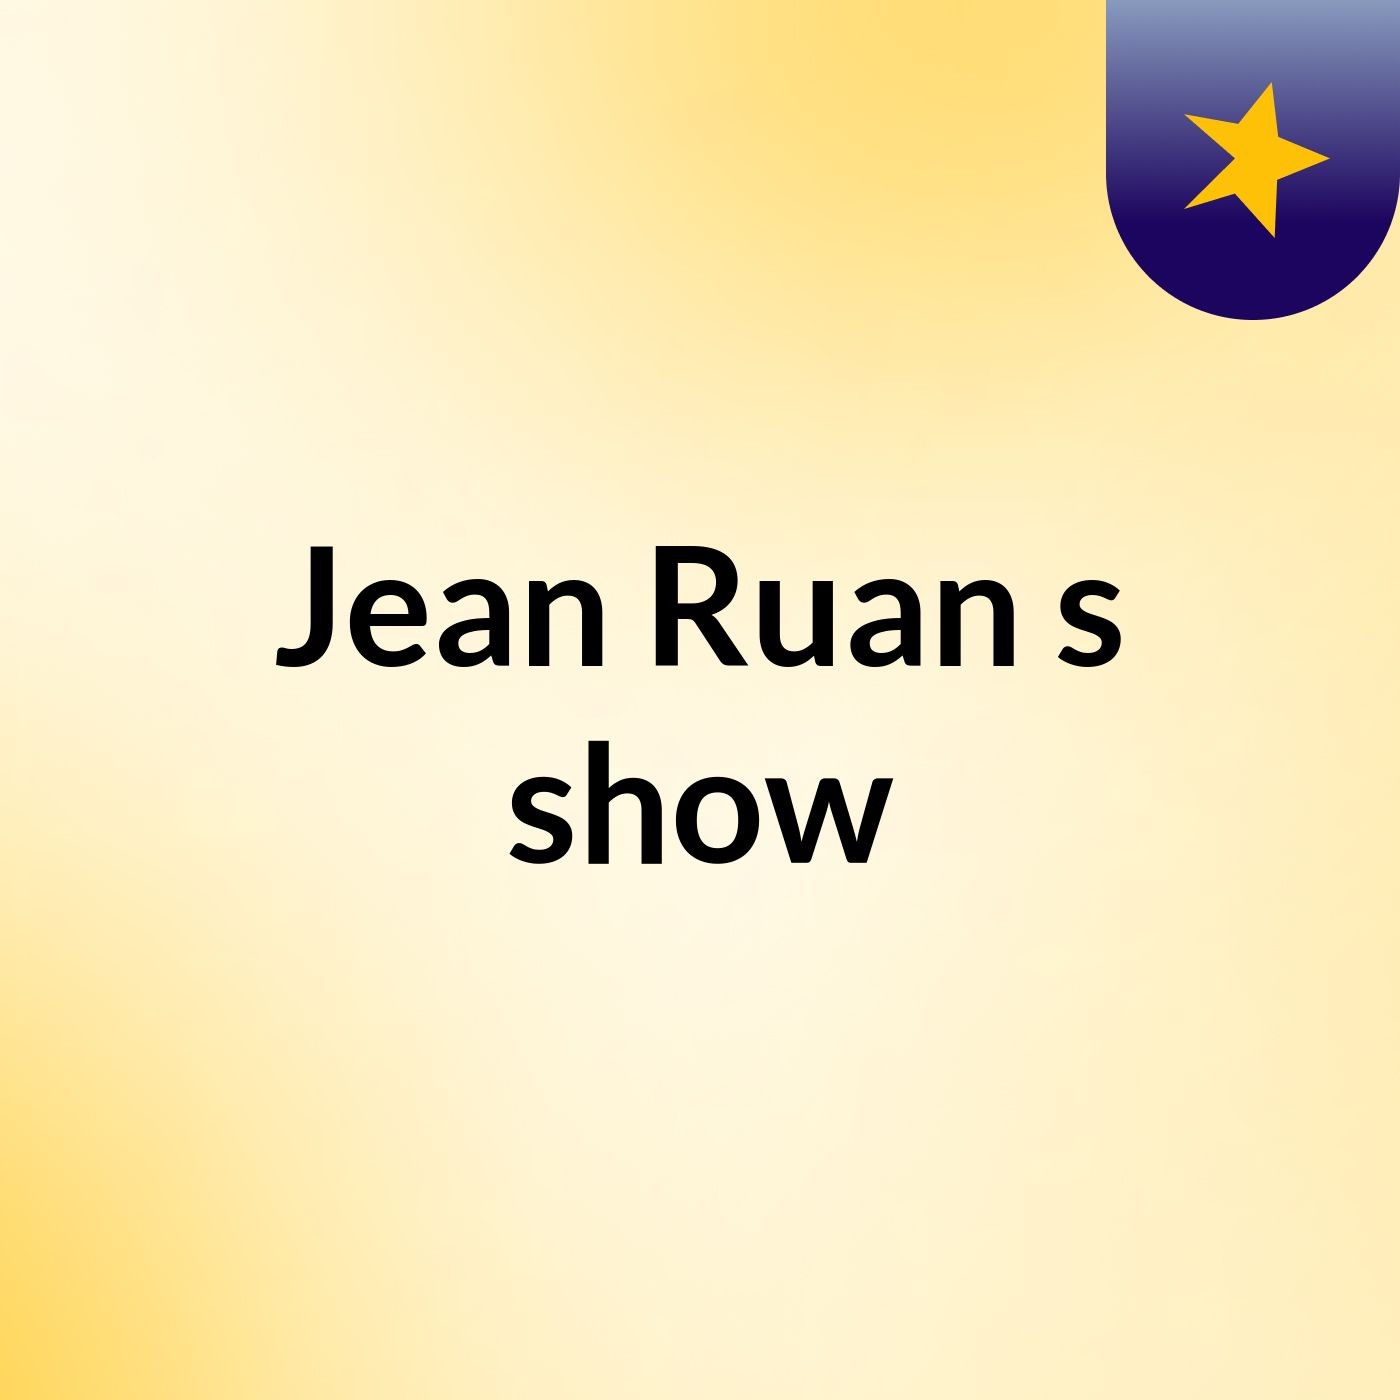 Jean Ruan's show